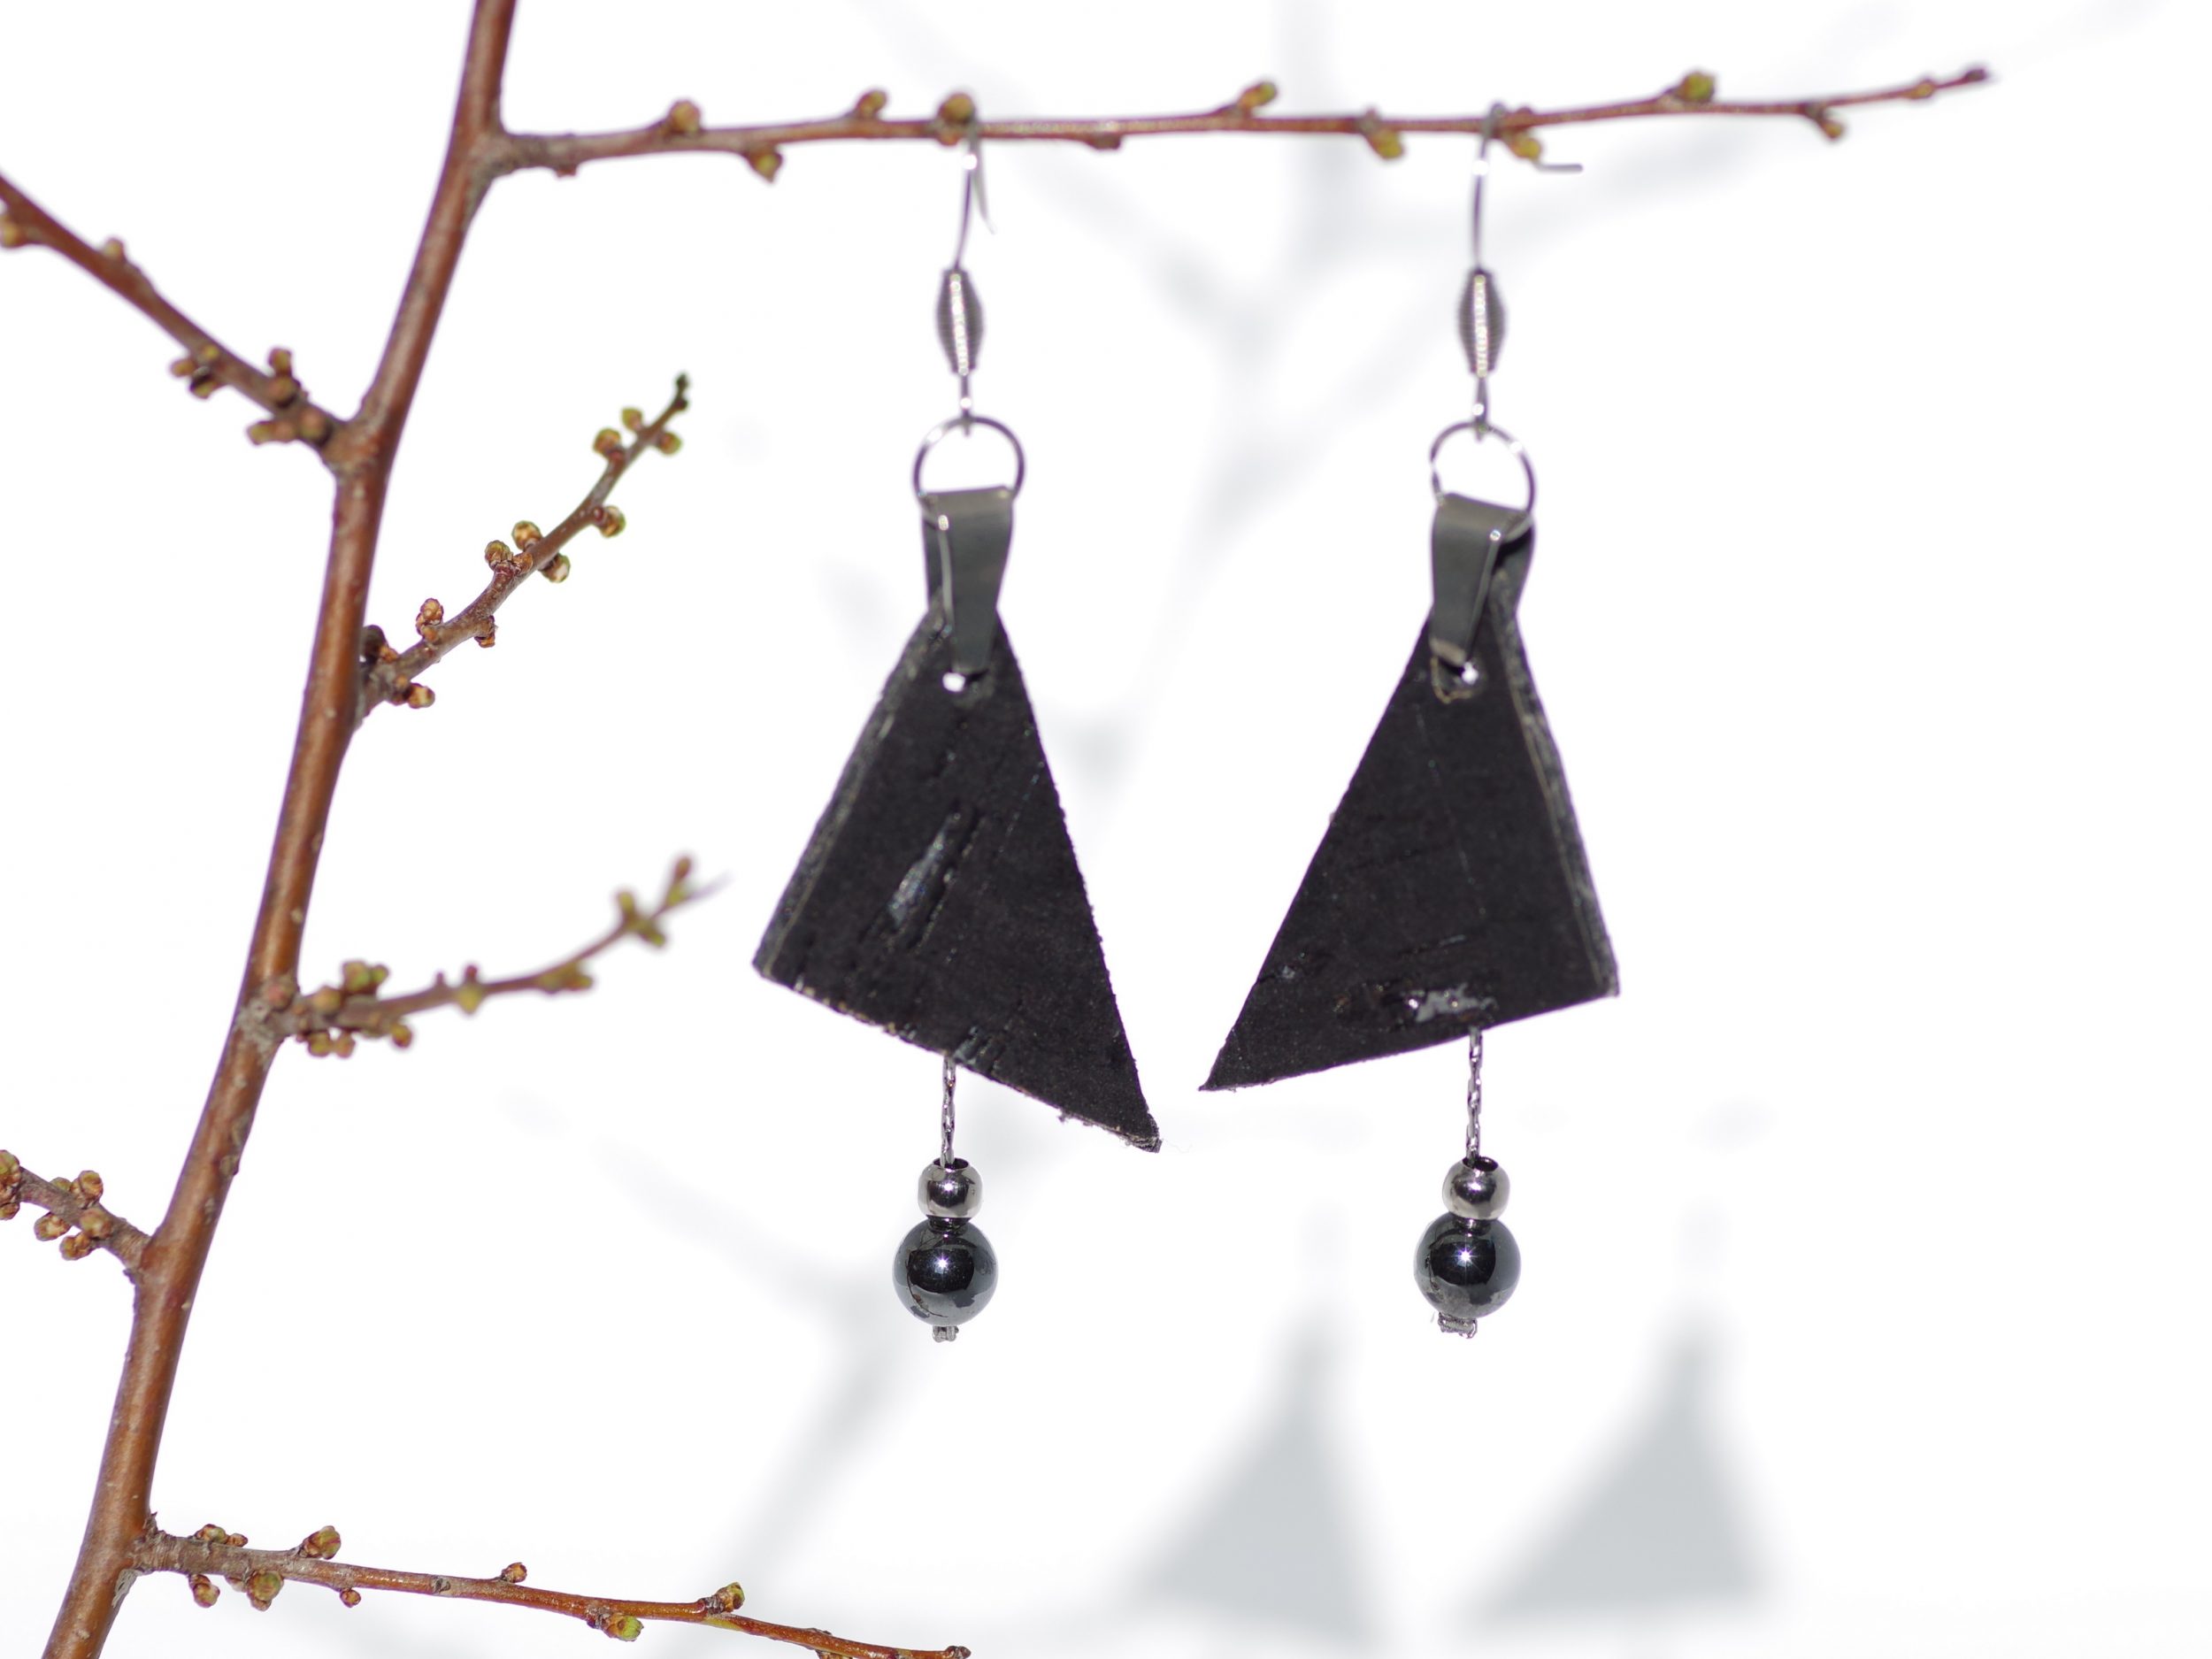 Boucles d'oreilles avec deux pendentifs : un triangle de liège noir et argent et une chaîne argentée portant des perles noires